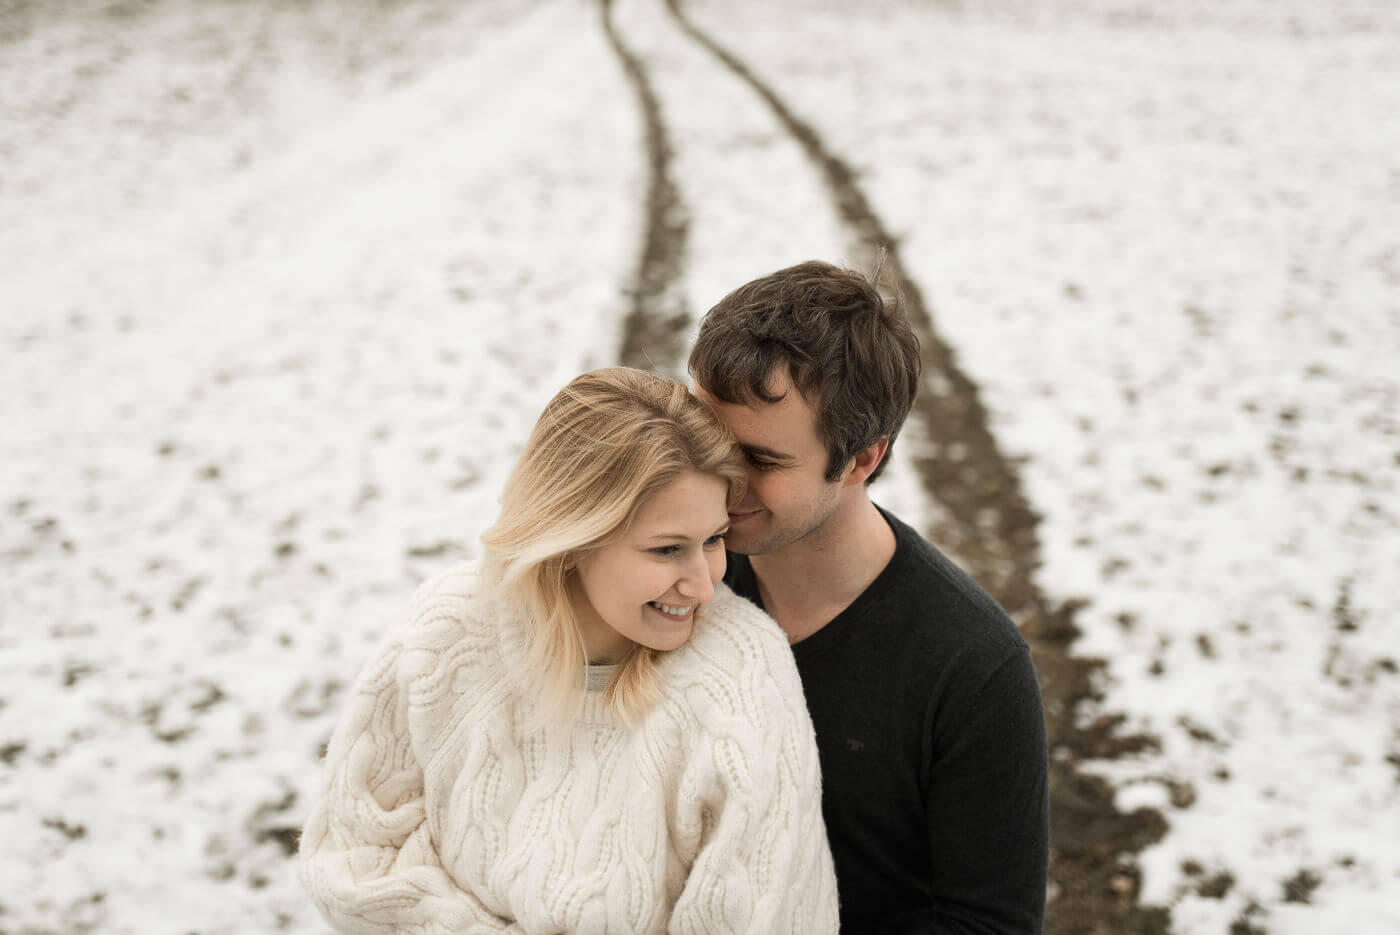 Wintershooting mit verlobtem Paar auf Schnee und sie lacht